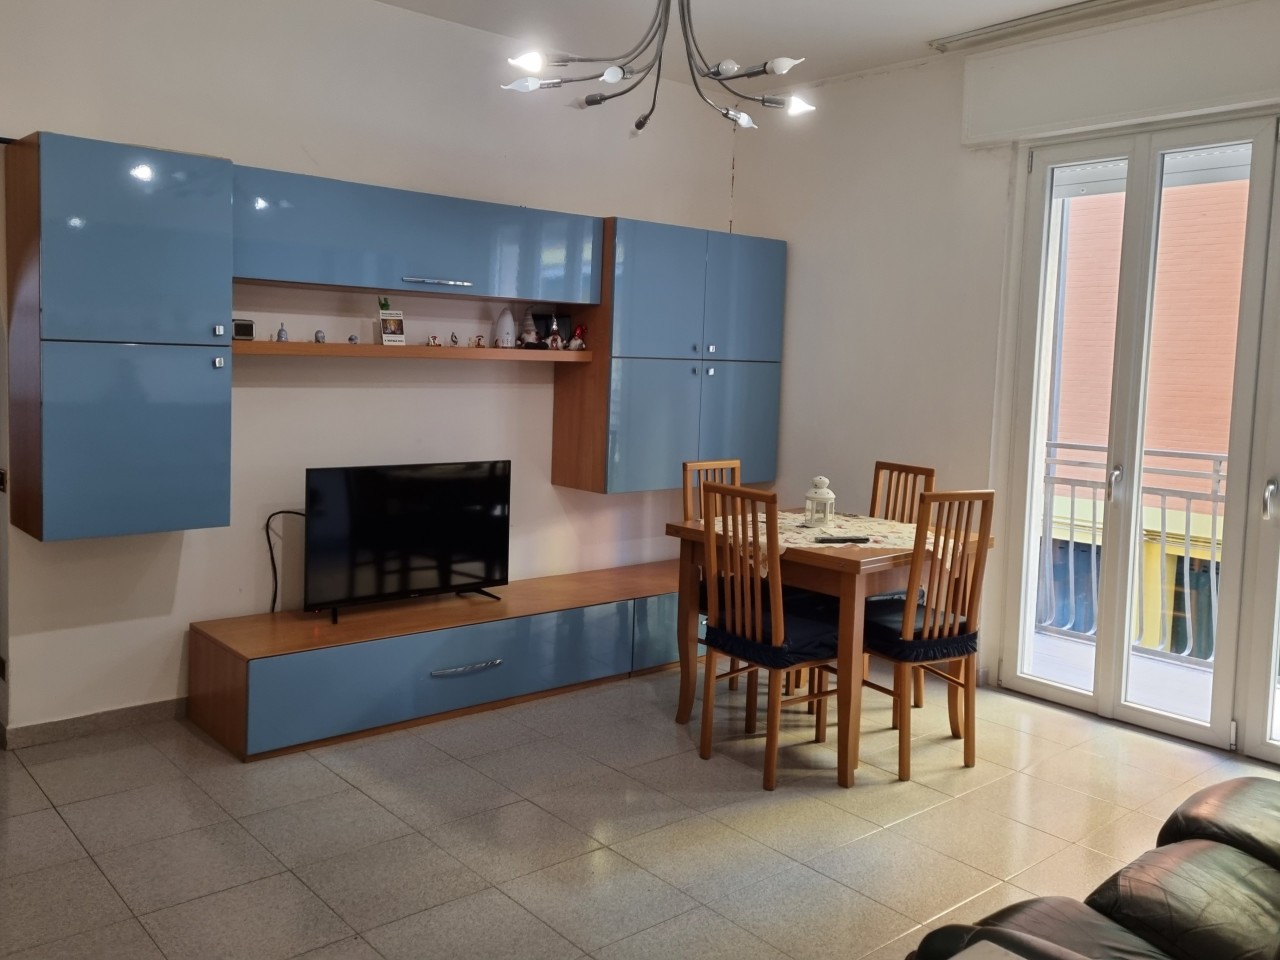 Appartamento in vendita a Cusano Milanino, 4 locali, prezzo € 145.000 | CambioCasa.it